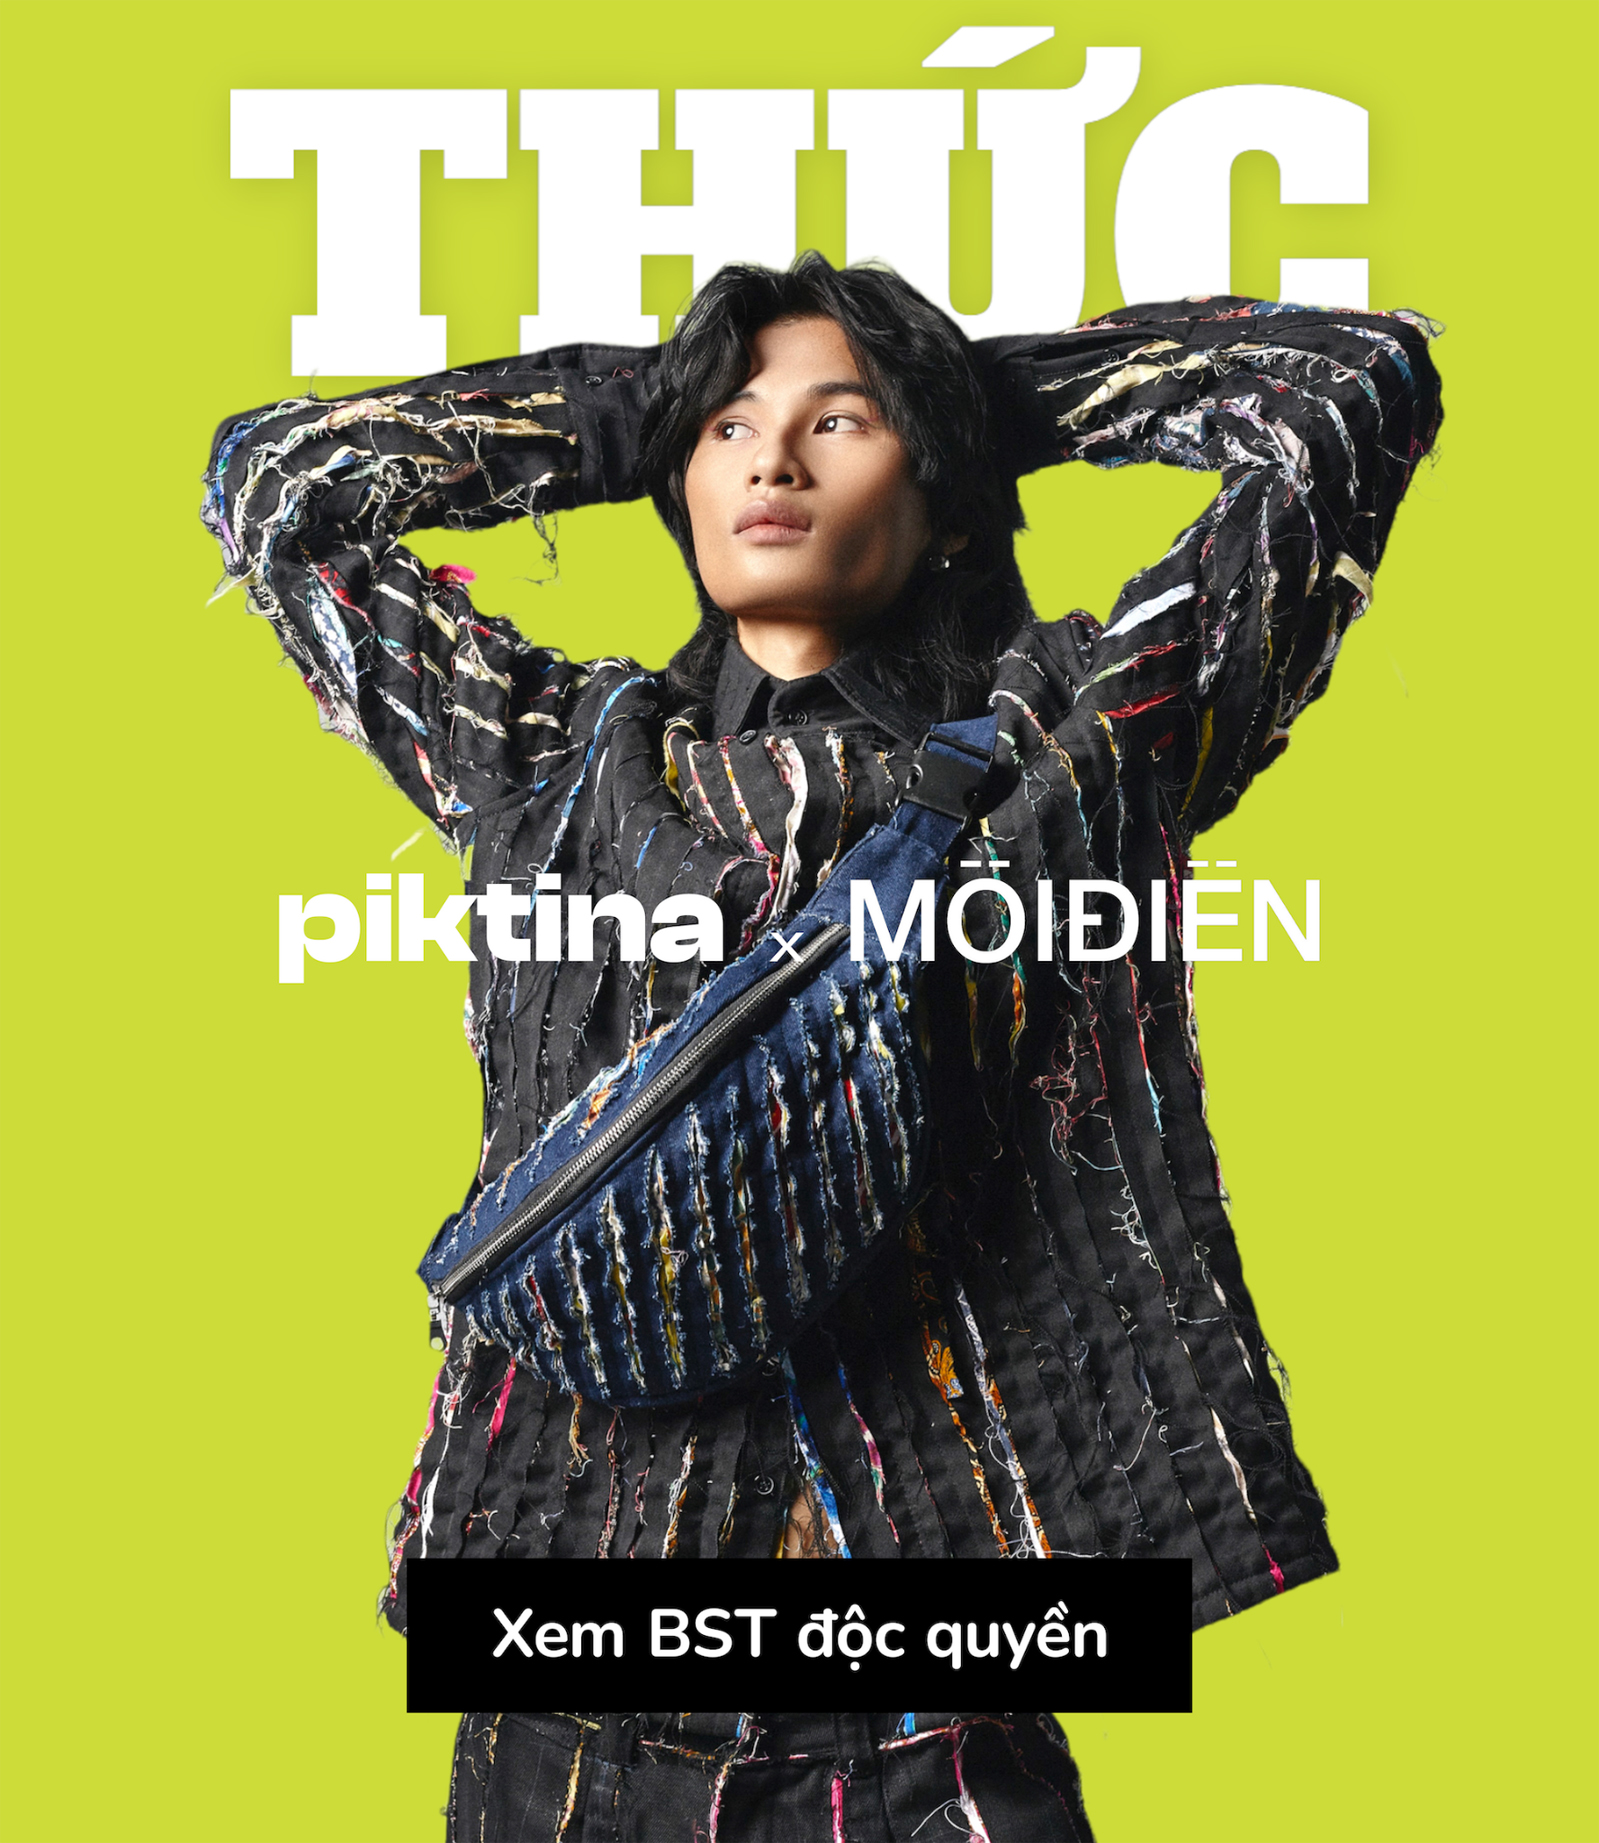 piktina x moidien 3 - Giới trẻ Việt “thức” tỉnh thế nào trong hành vi mua sắm quần áo thời trang?